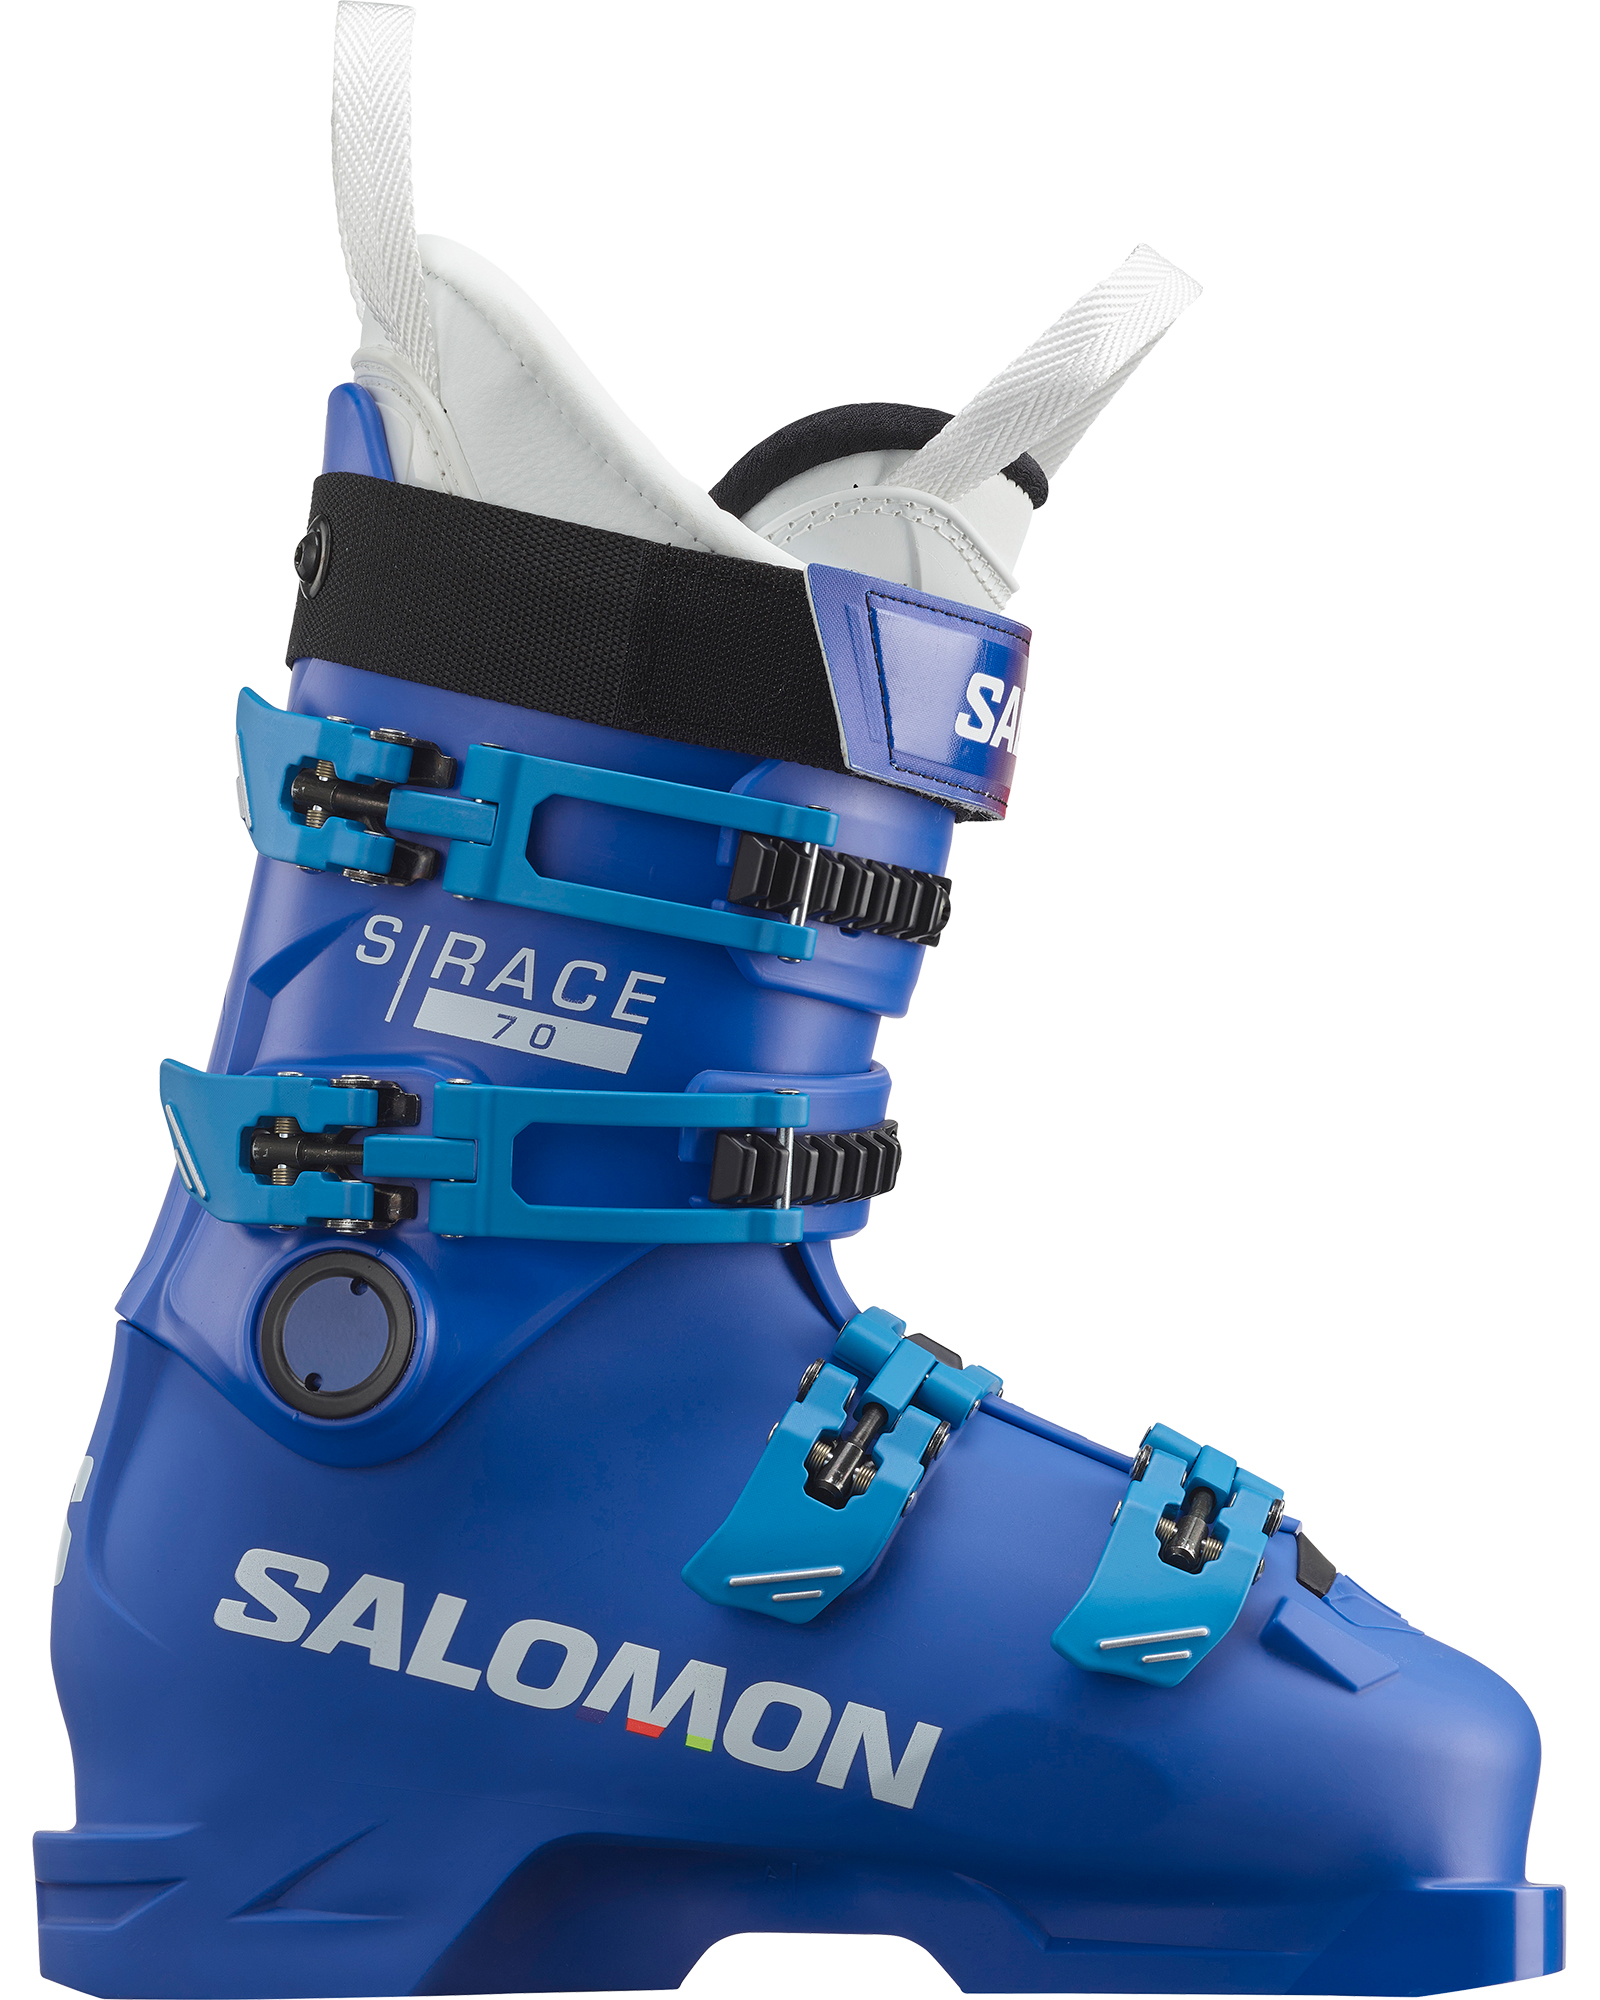 Salomon S/Race 70 - Race Blue /White/Process Blue MP 24.0